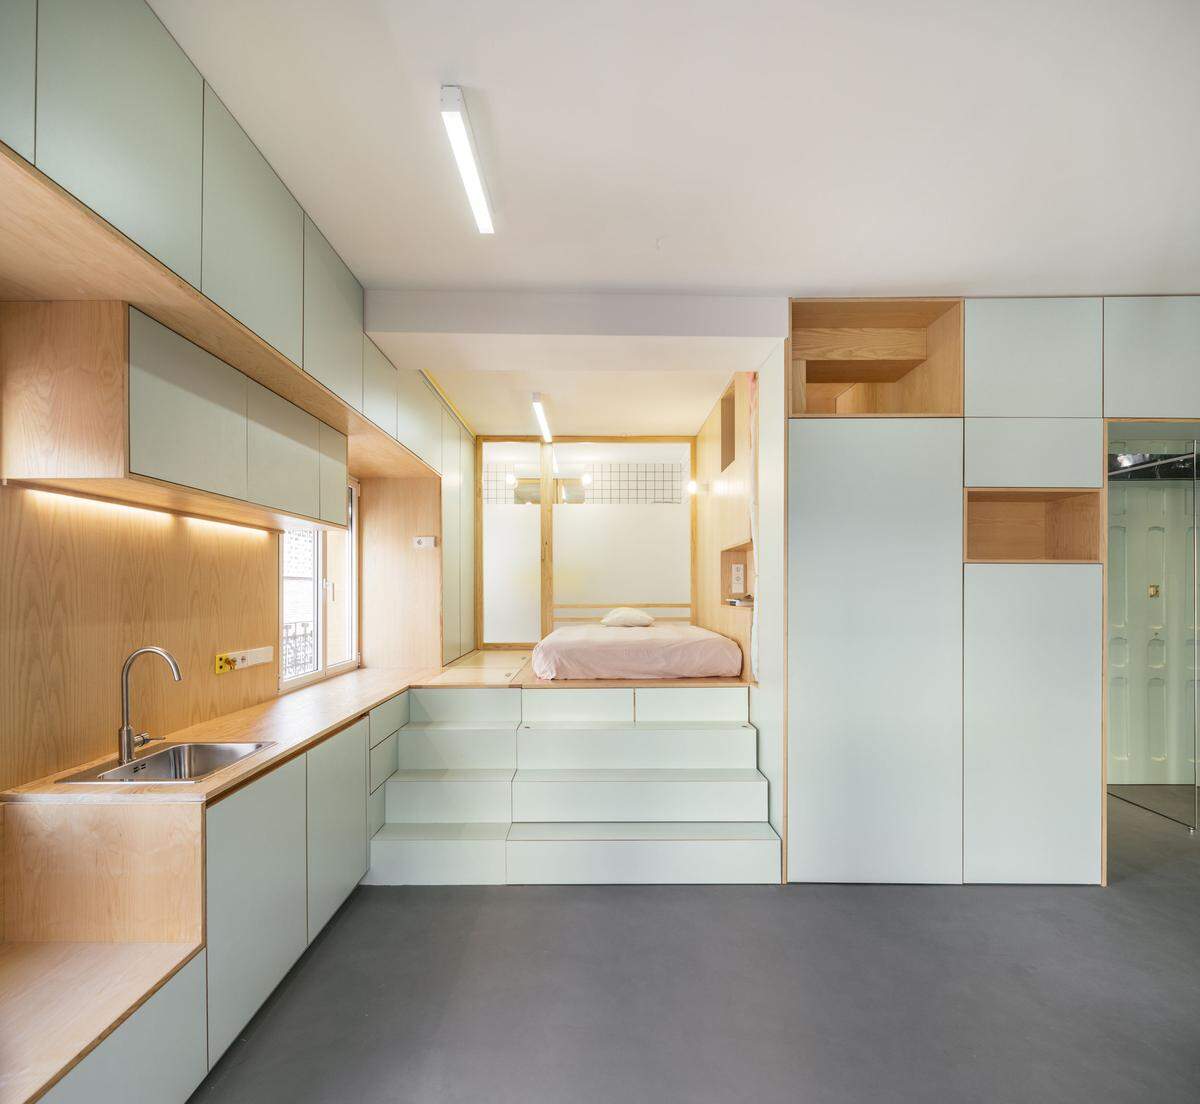 elii [oficina de arquitectura], Yojigen Poketto Apartment (Küchenzeile und Schlafbereich), Madrid, Spanien, 2017.